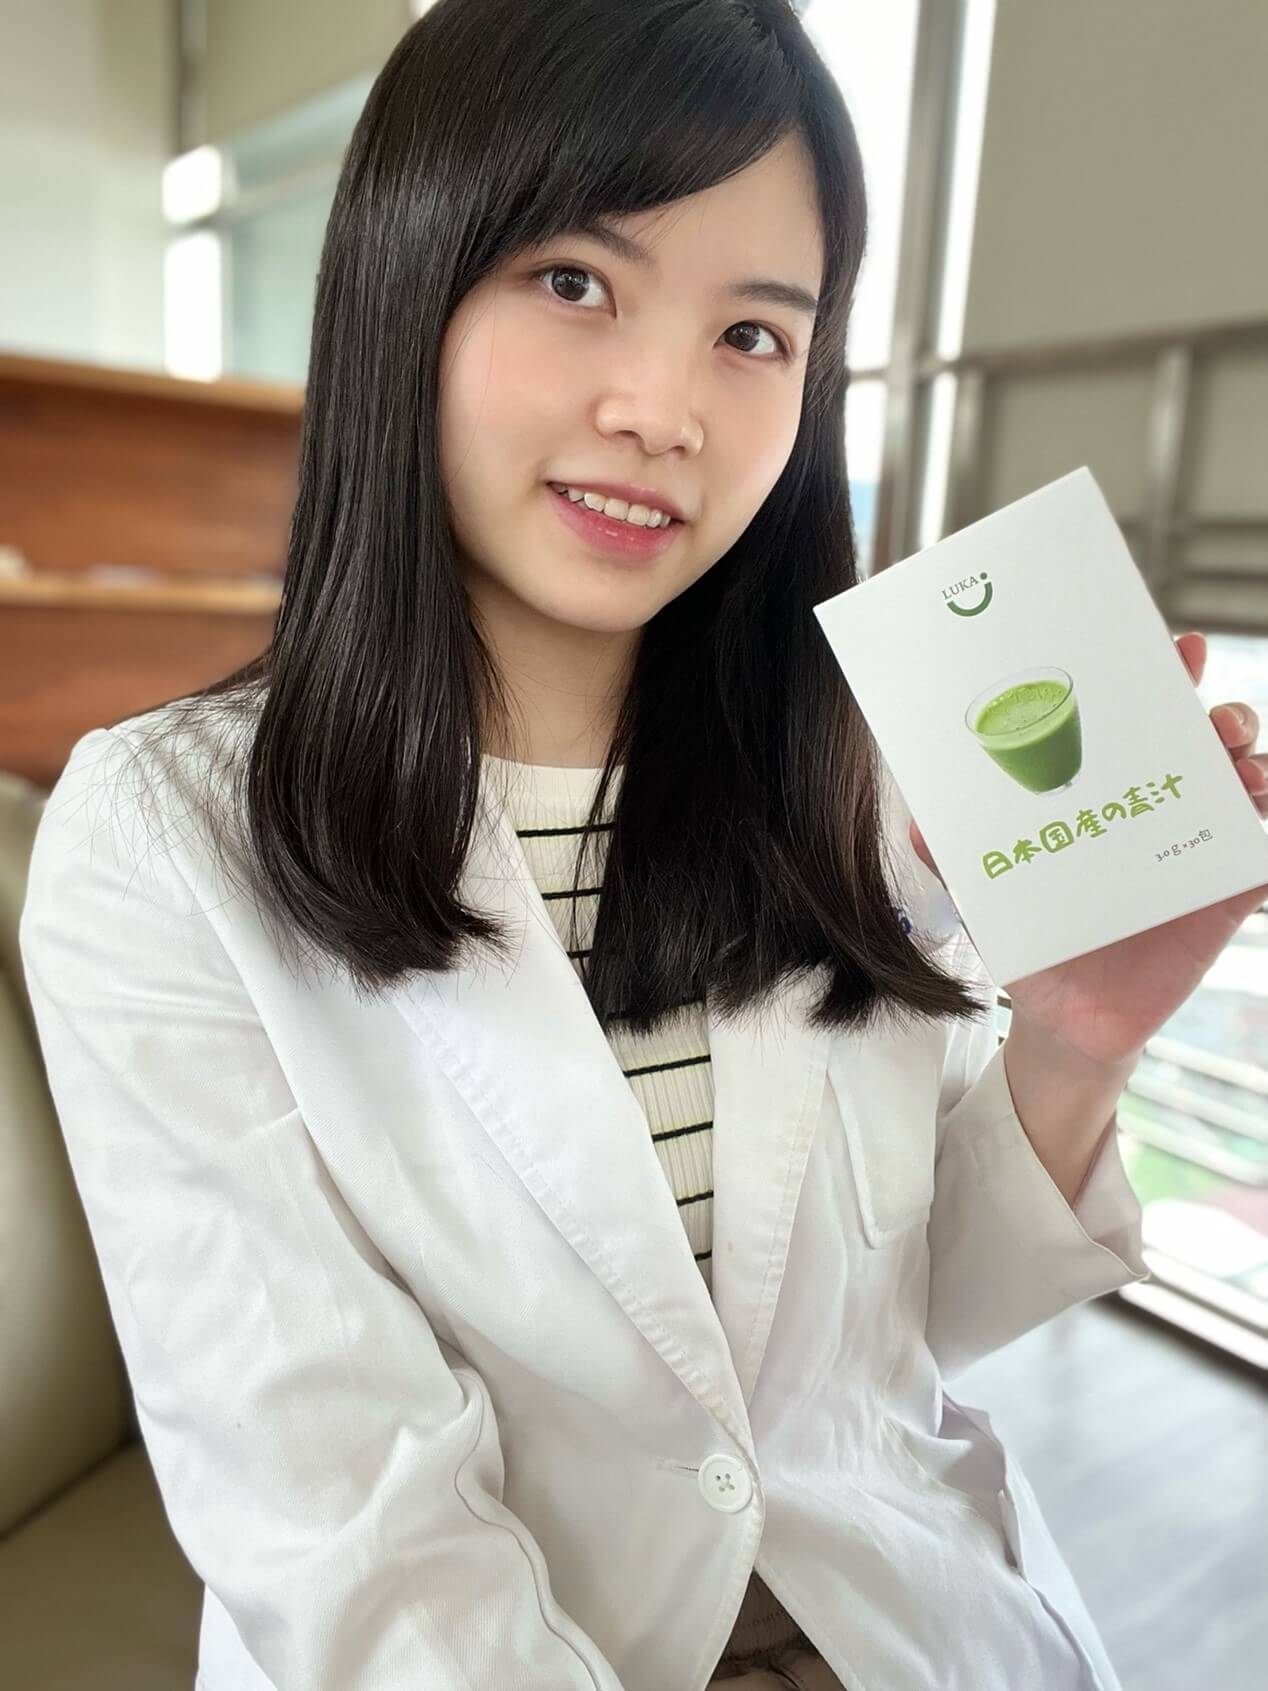 婦科醫師也愛喝！LUKA日本乳酸纖青汁抹茶風味推薦給快節奏男女